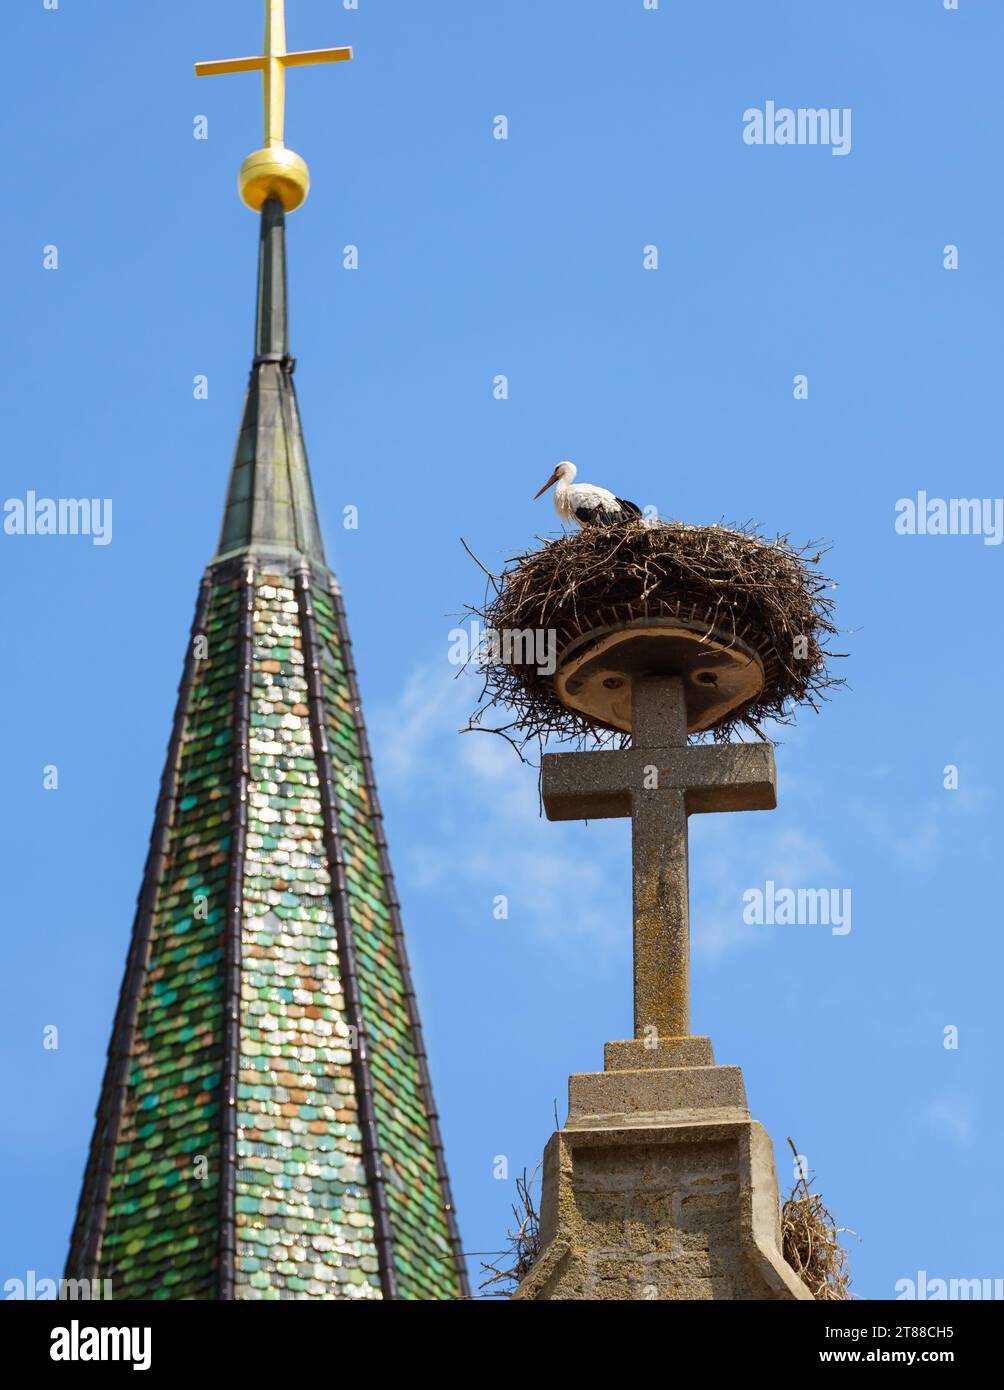 Storch im Nest auf dem Dach der Kirche, weißer Vogel sitzt auf einem großen Steinkreuz des Dachs auf dem Himmelhintergrund. Vertikale Ansicht des Wildstorchs, der auf der Gebäudeoberseite lebt, in s Stockfoto